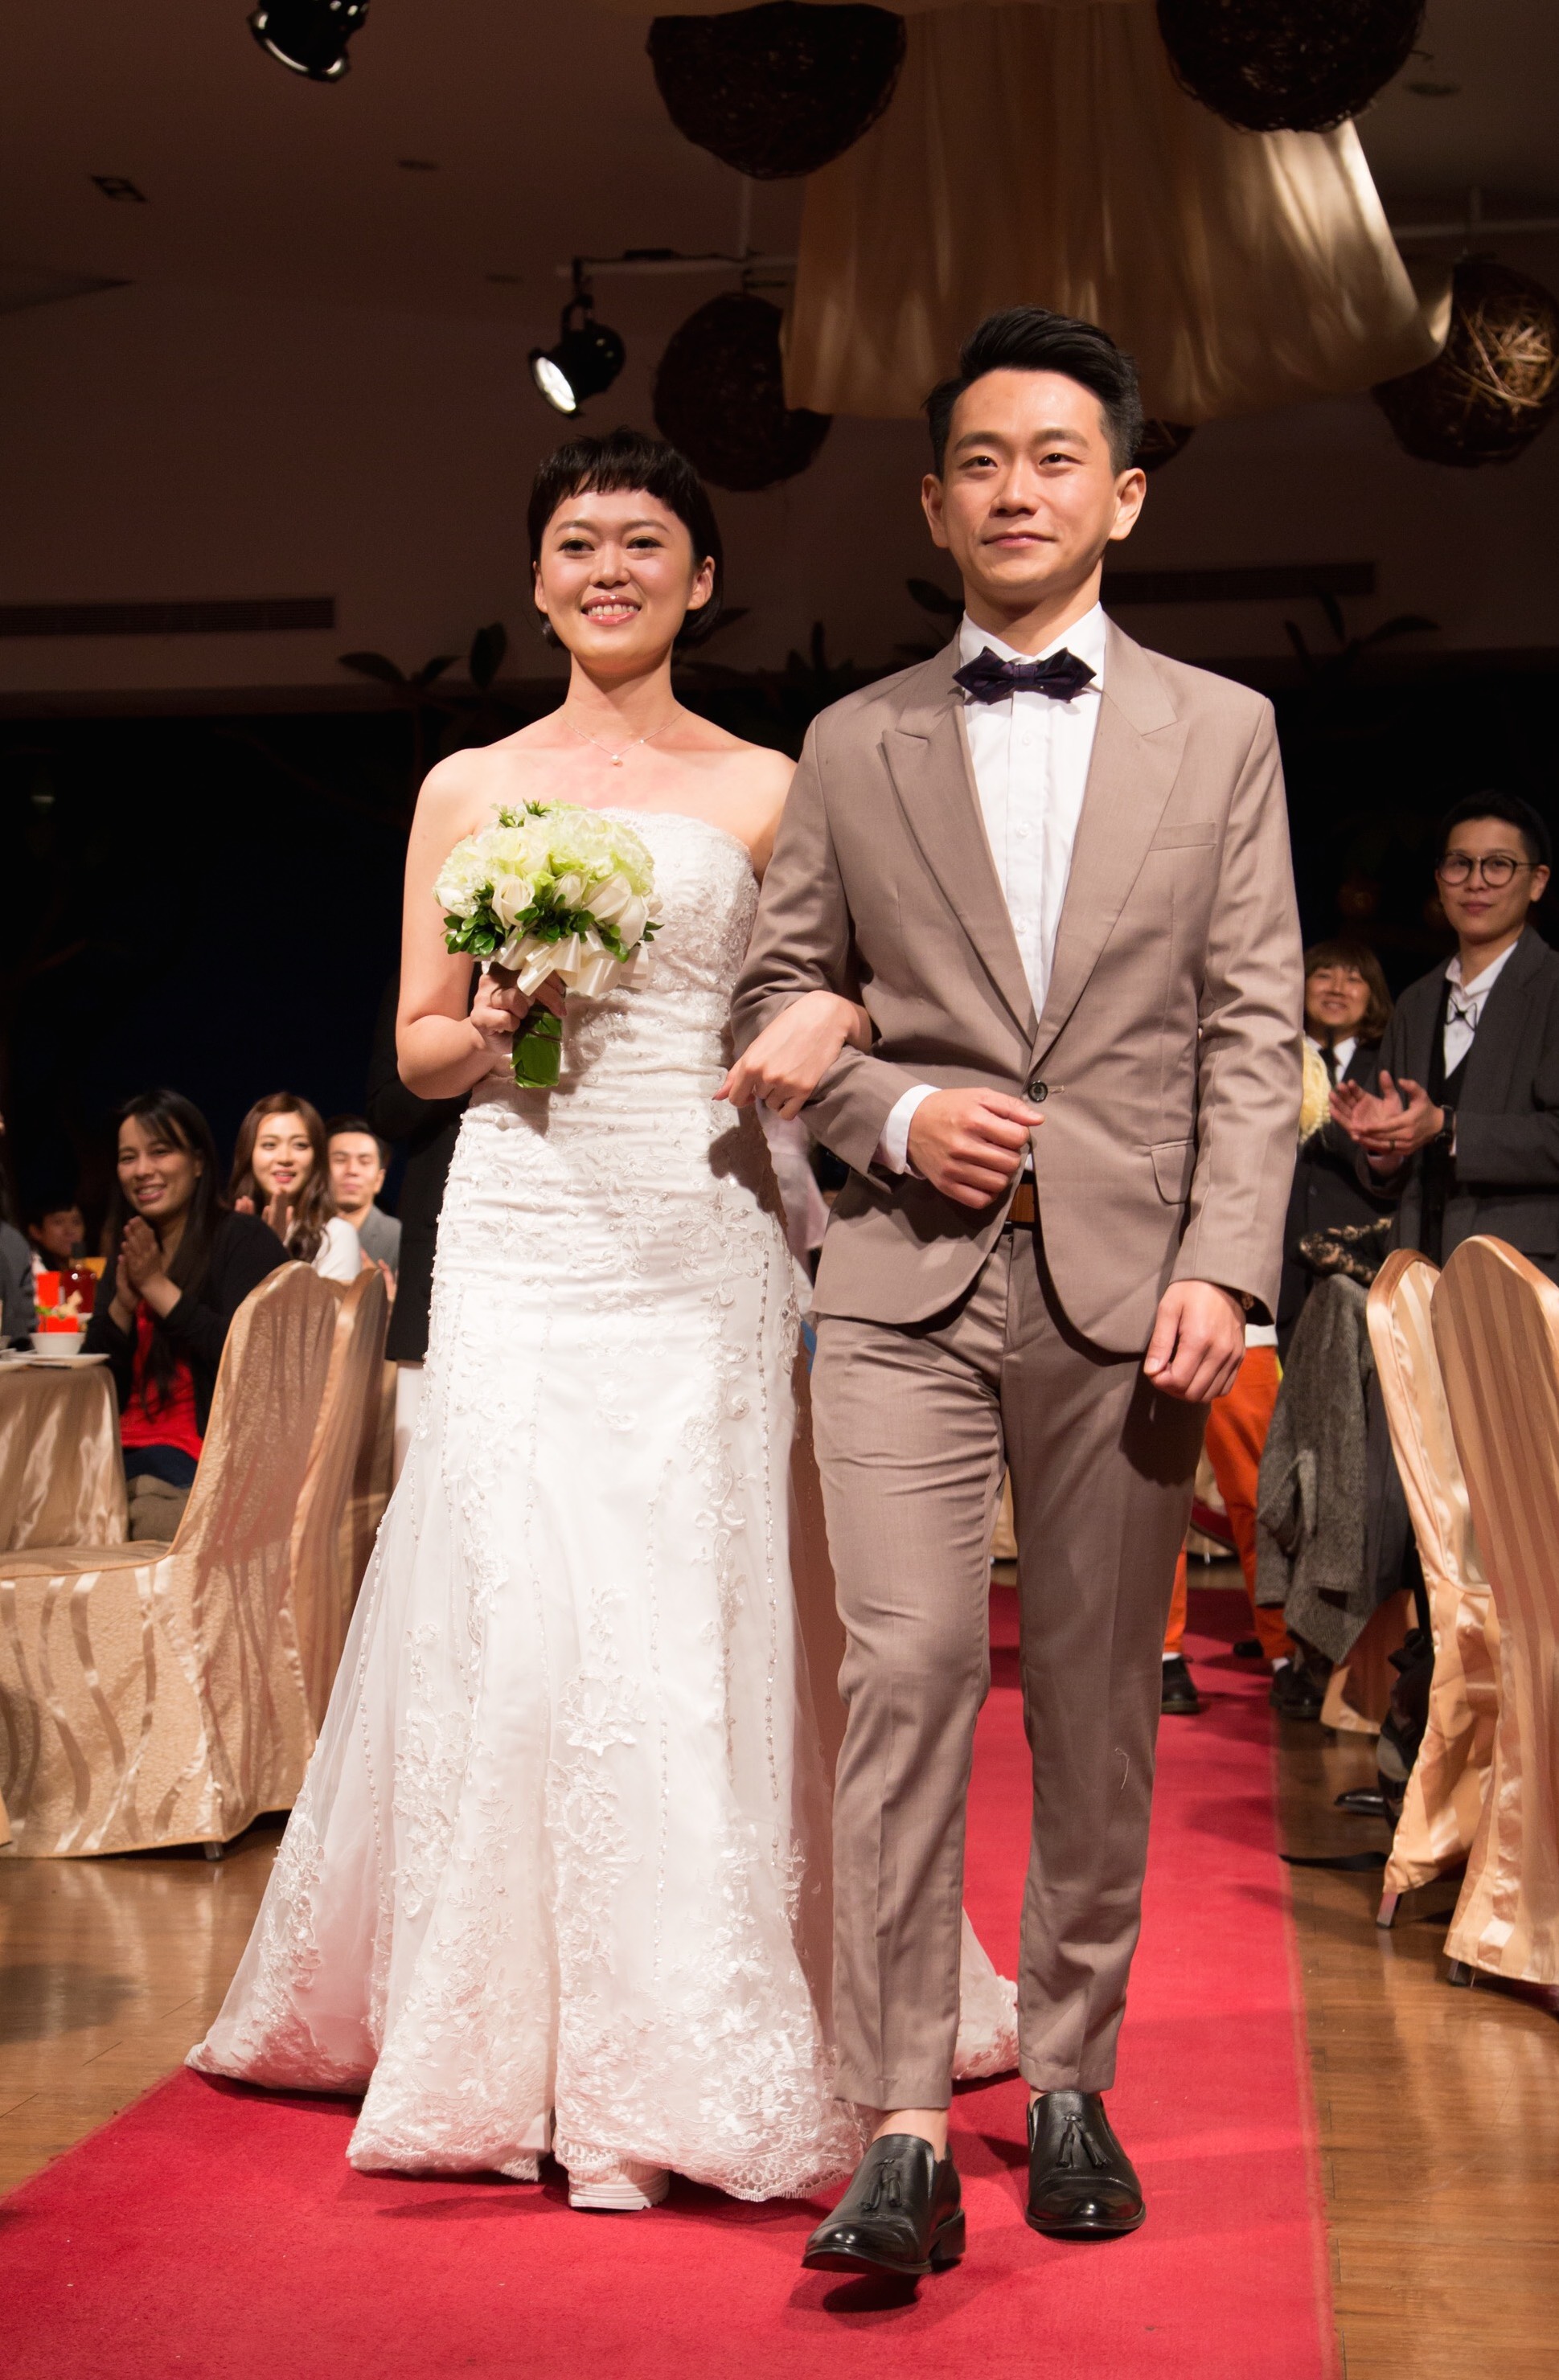 陳家逵與同為劇場演員的周羿汎辦婚宴。